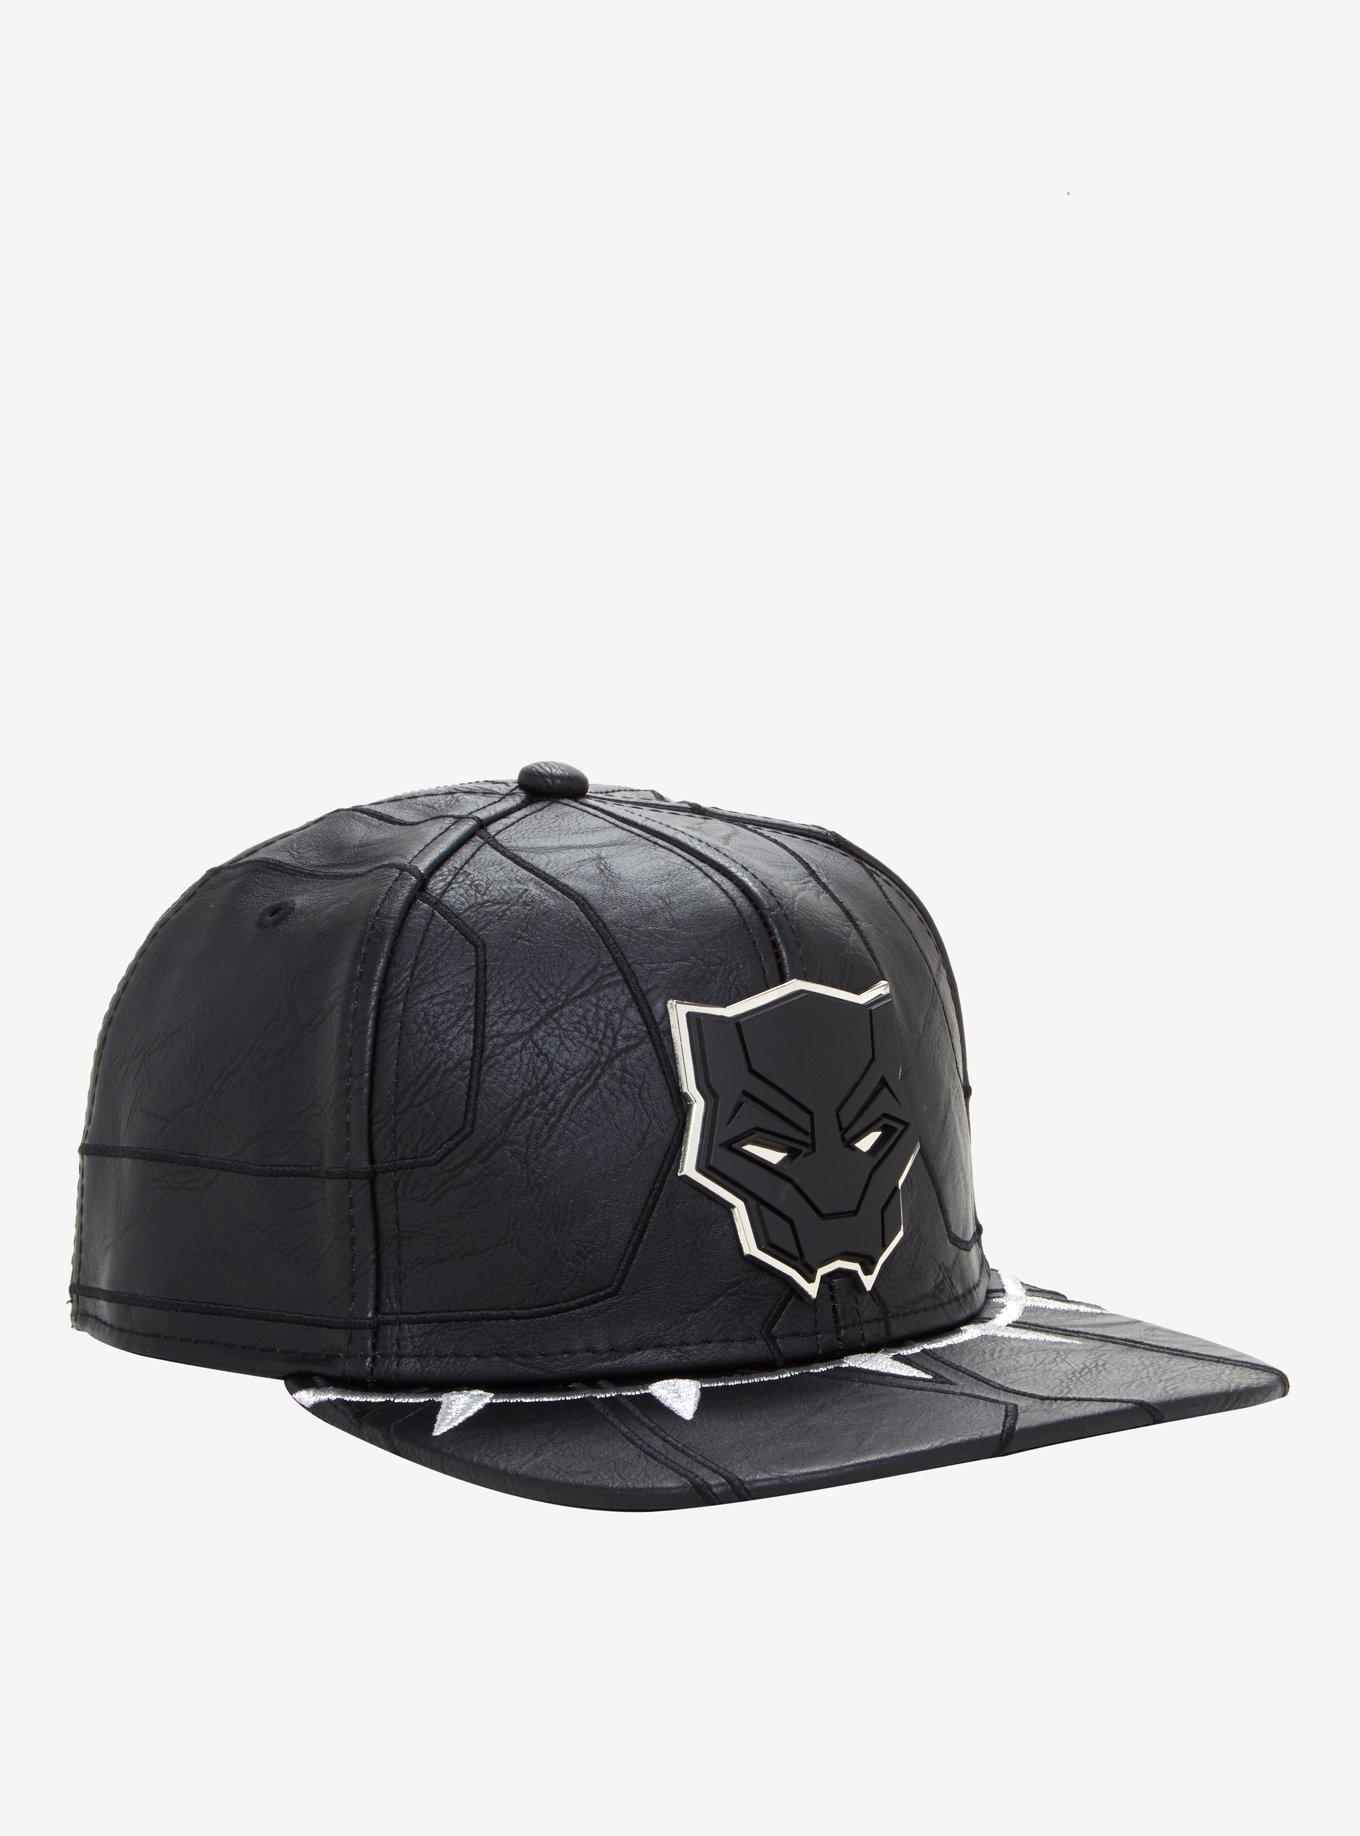 Marvel Black Panther Faux Leather Snapback Hat, , hi-res